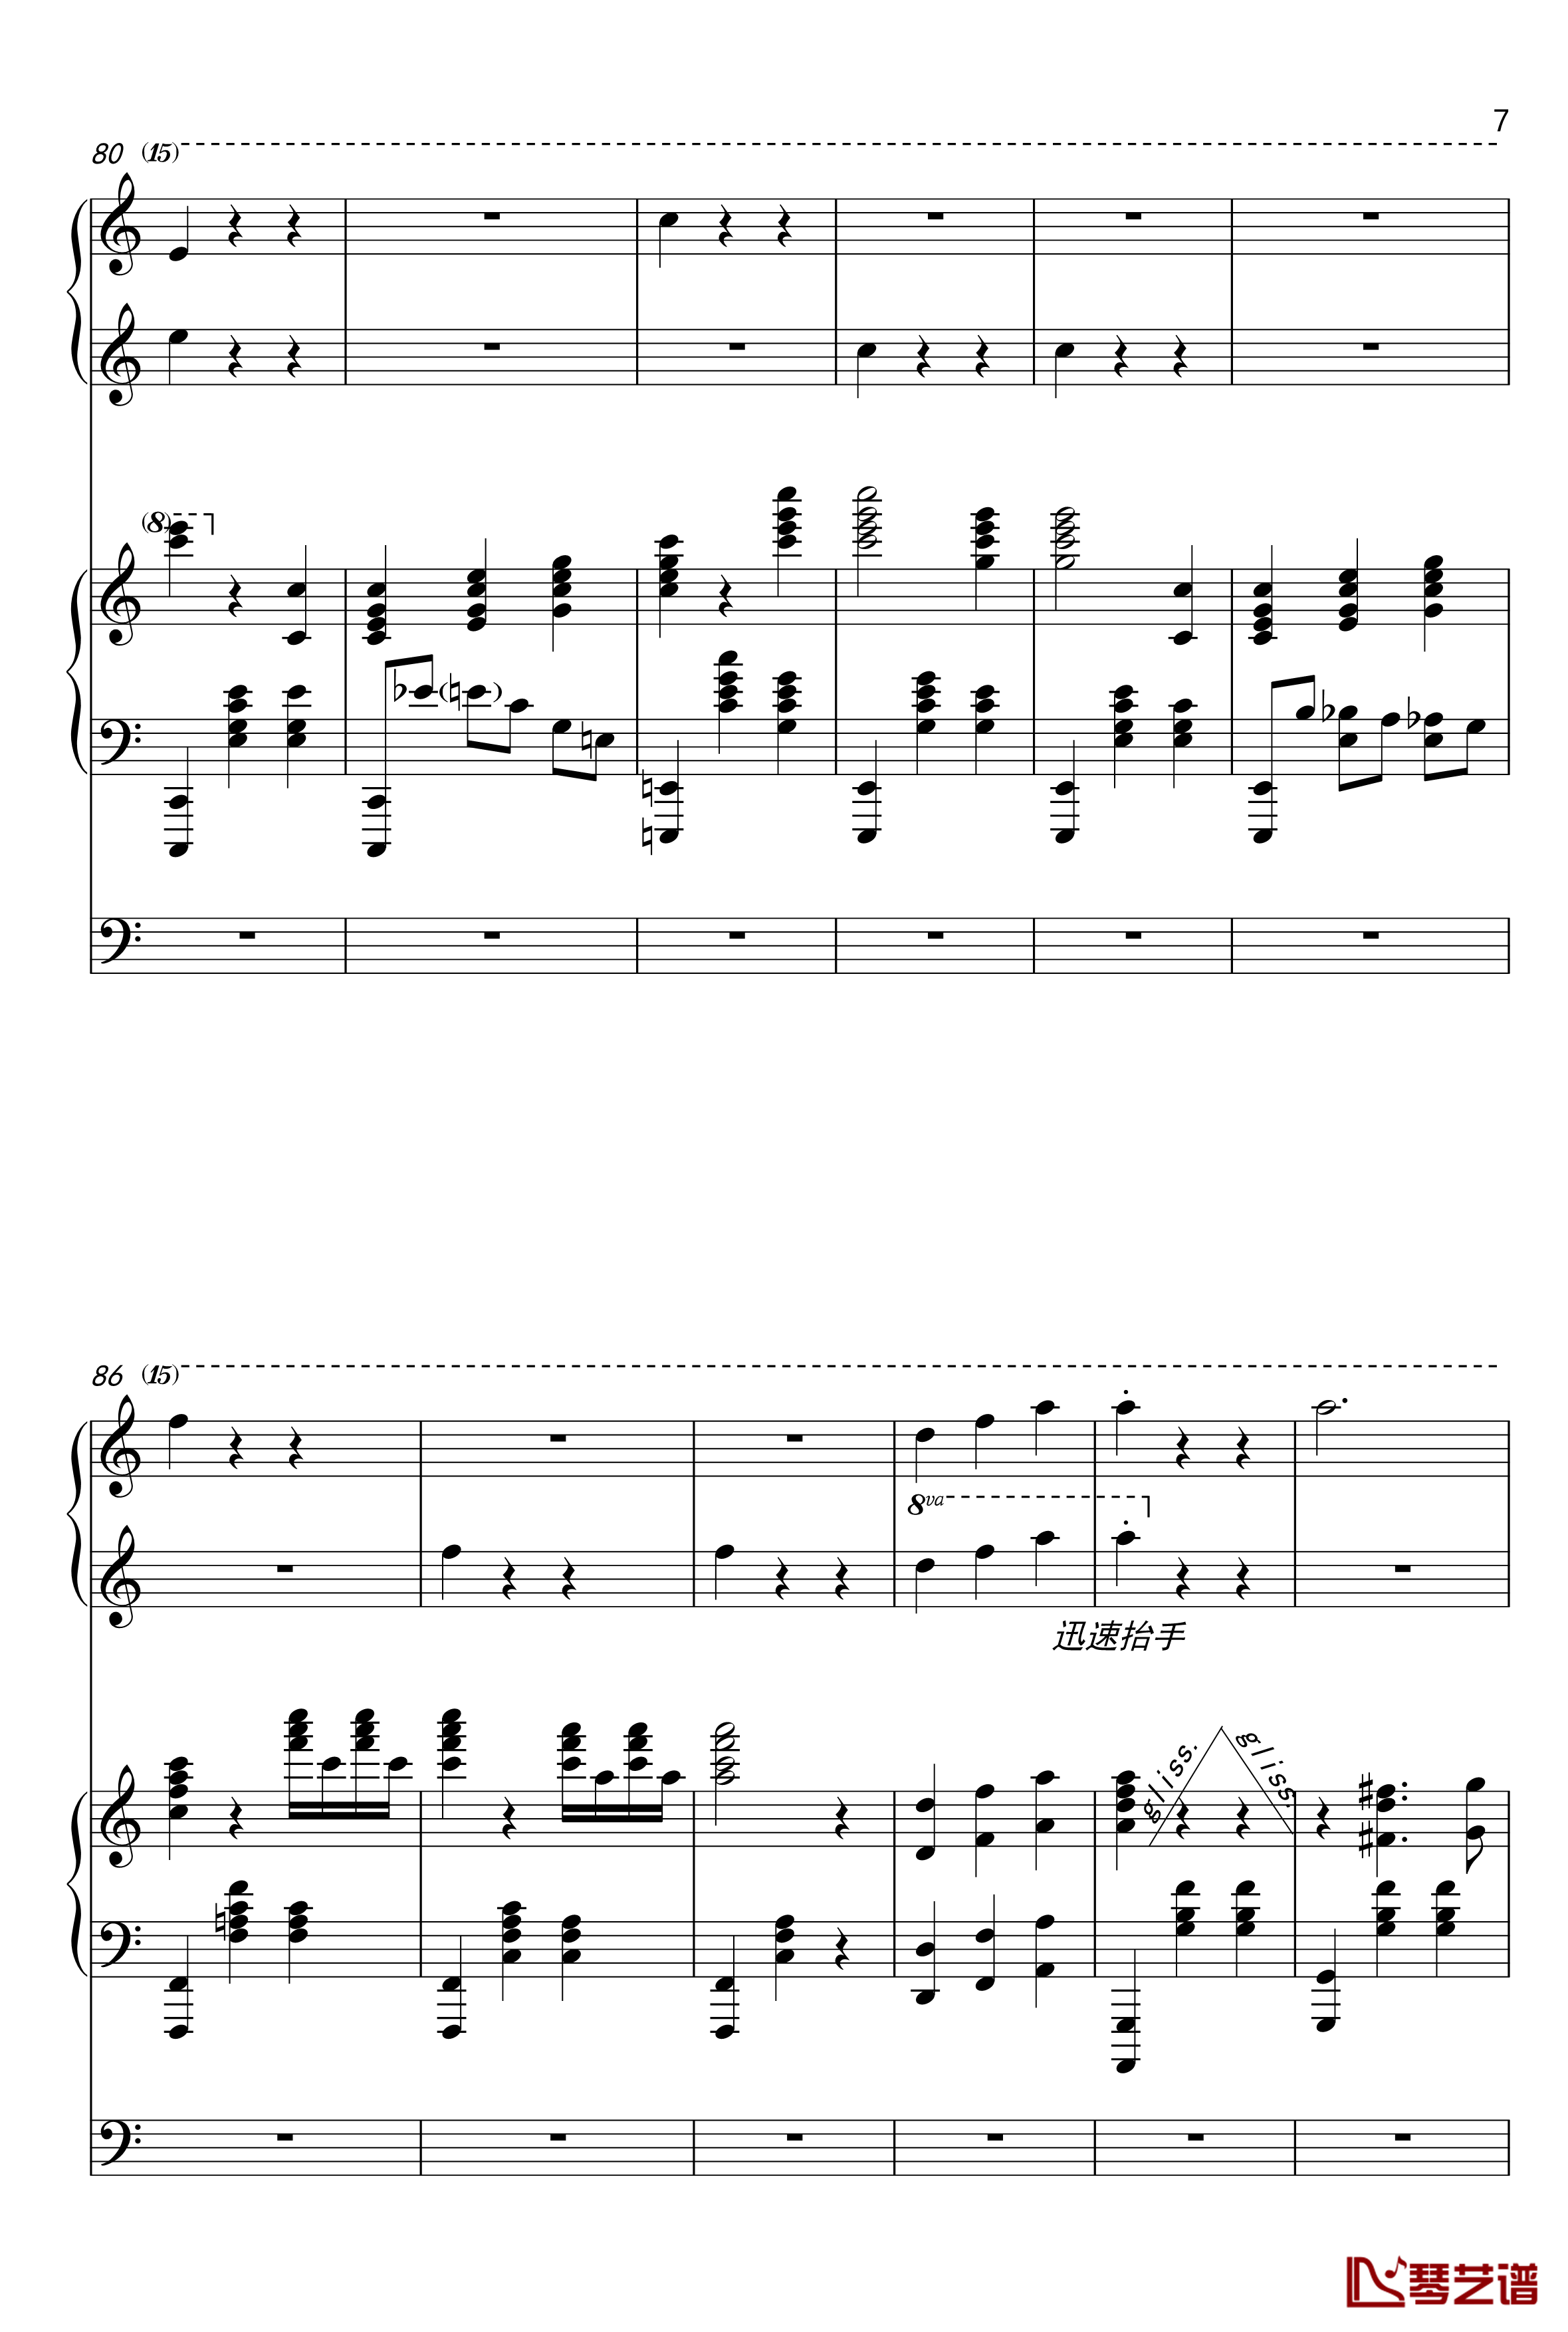 蓝色多瑙河钢琴谱-幼儿钢琴 双排键协奏版-王秉坤7